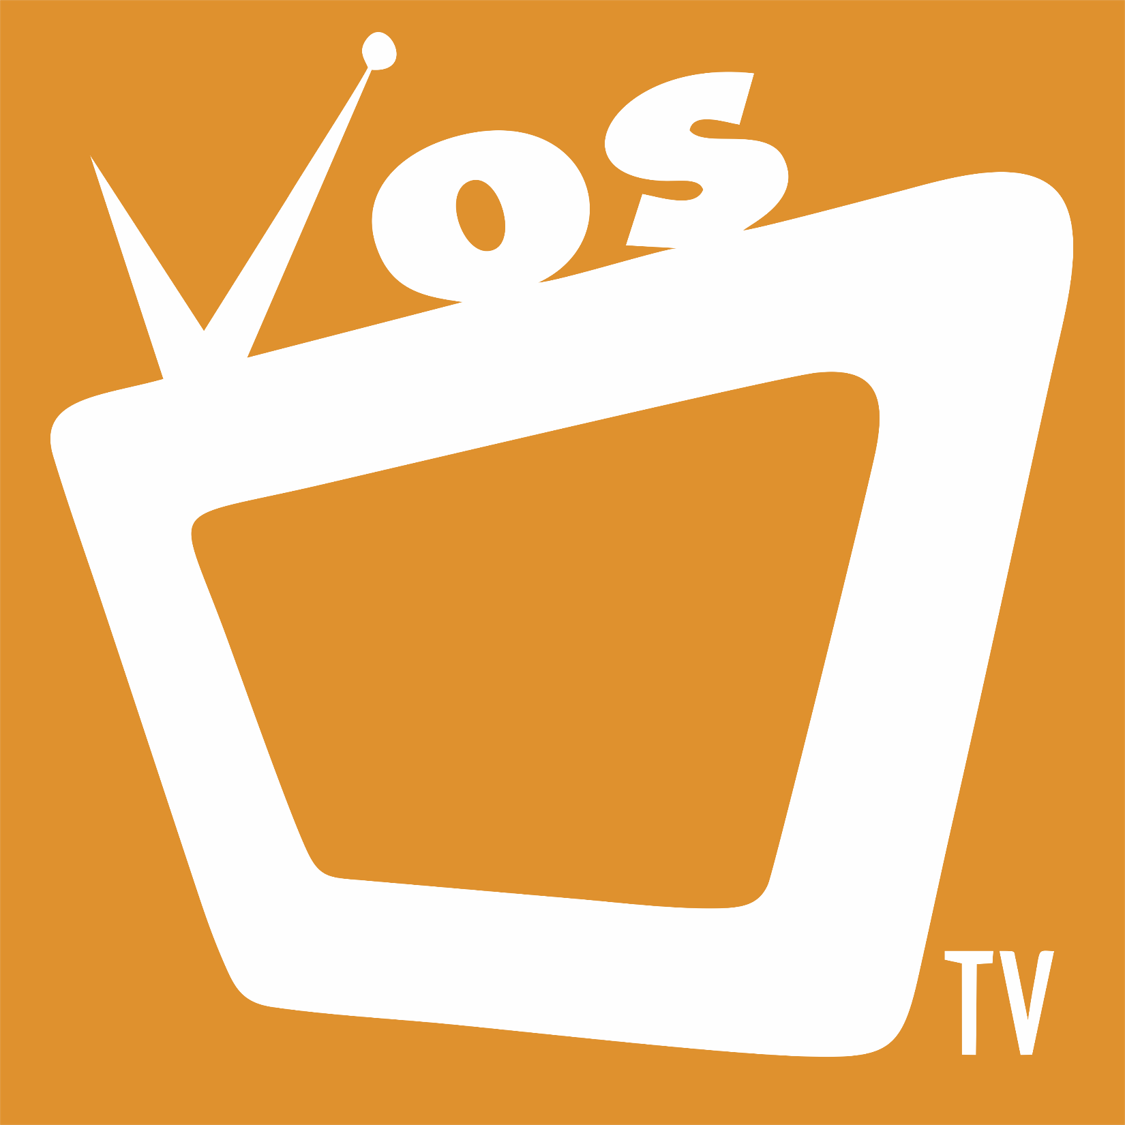 Vos Tv